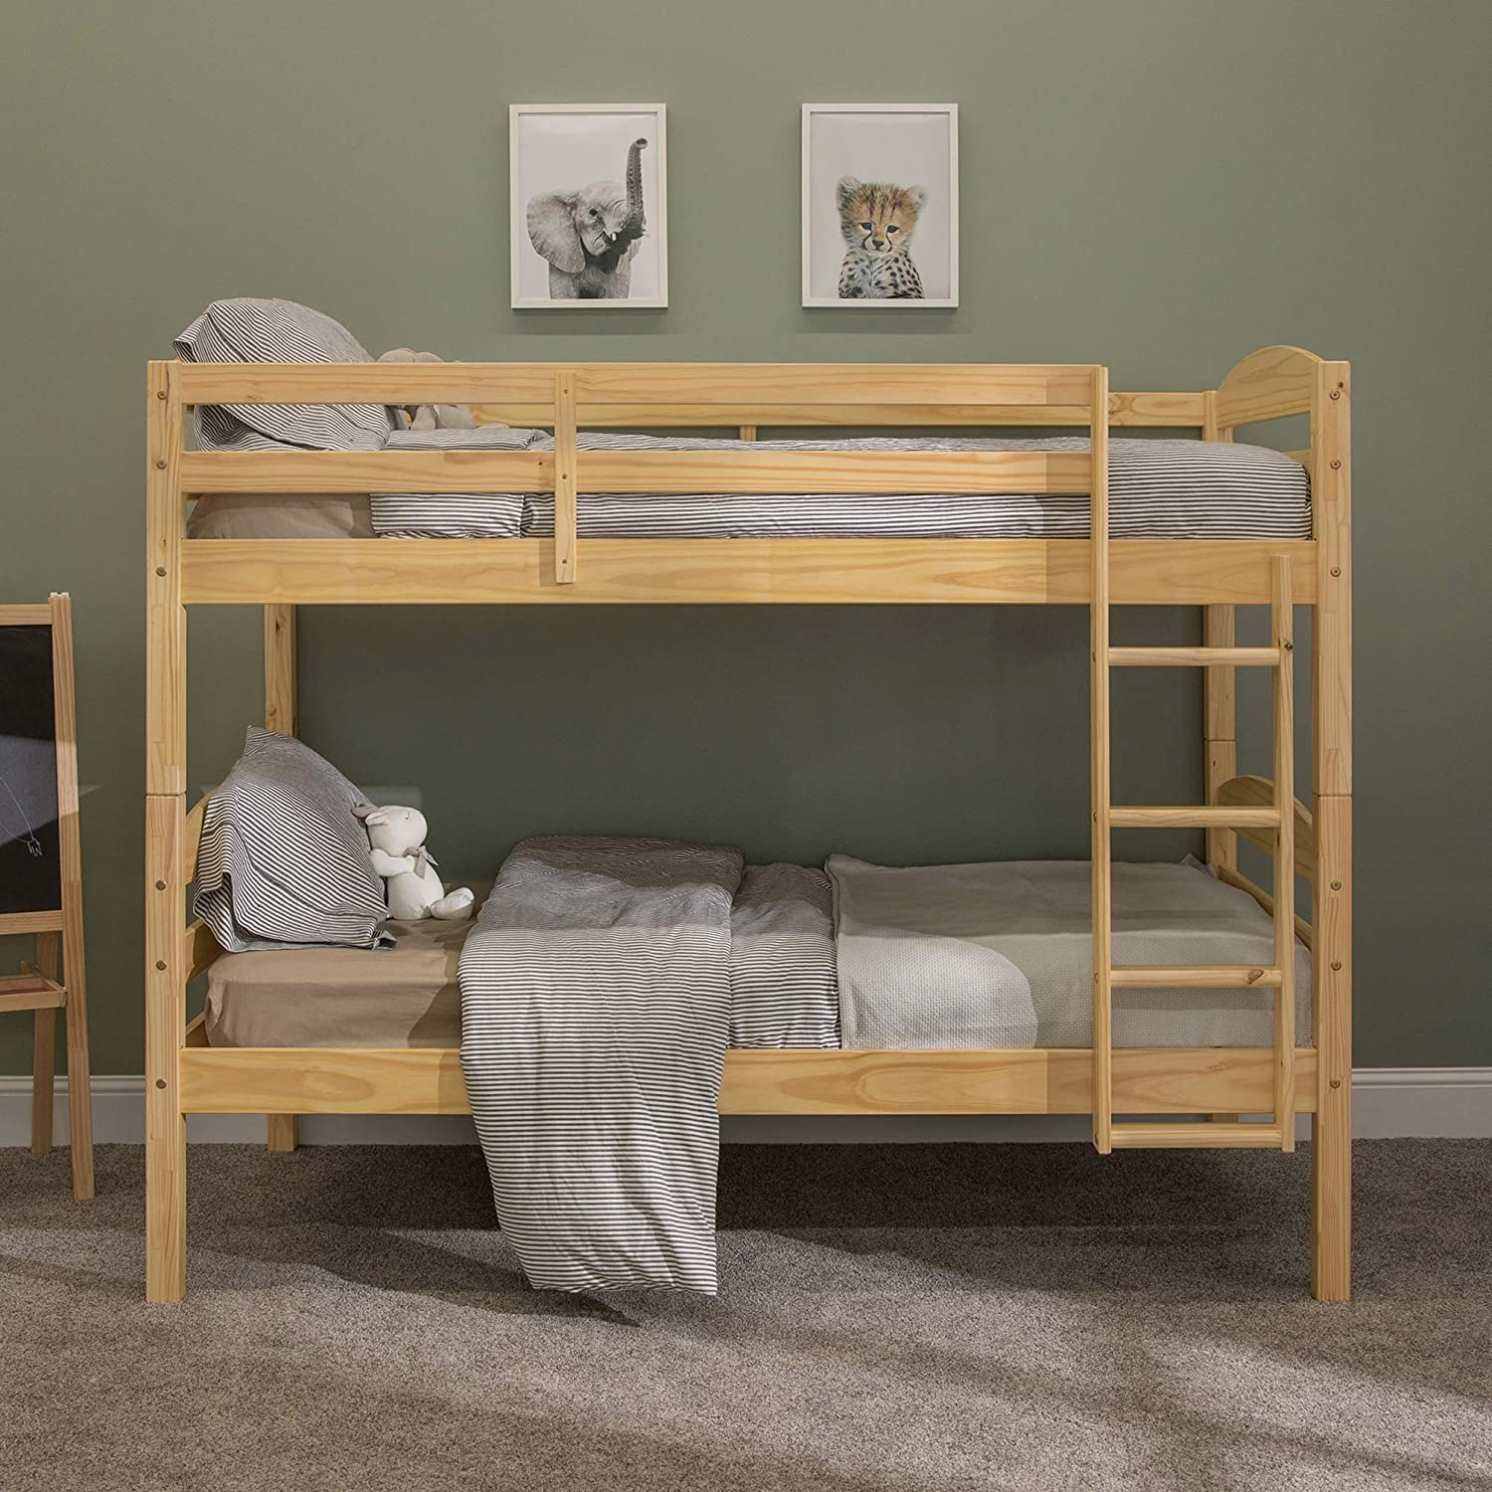 متوفر الان سرير اطفال تصميم خشبي مستويين اونلاين | بيوت